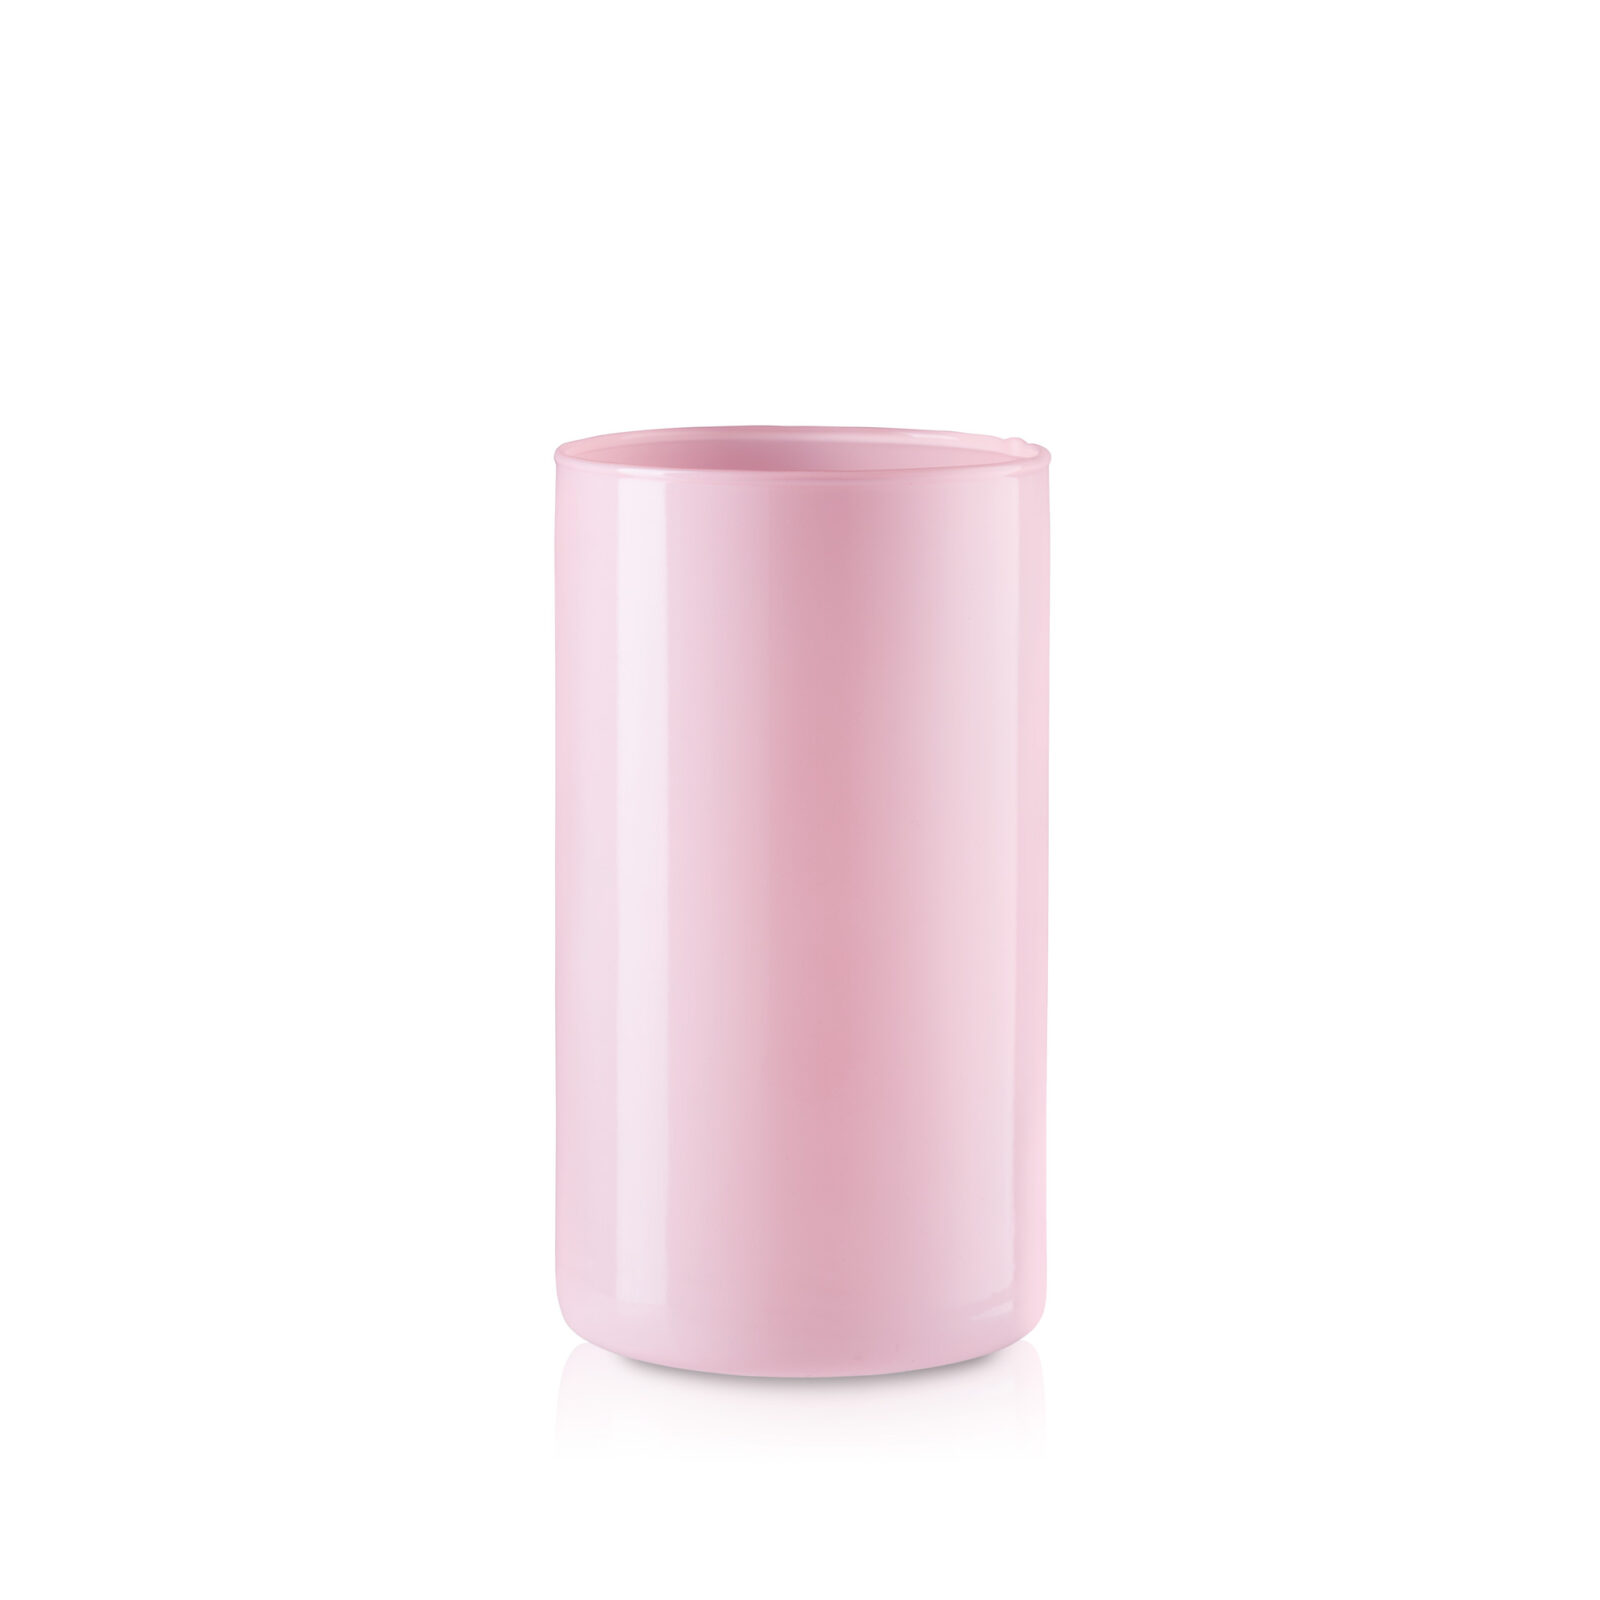 Wazon szklany cylinder tuba różowy połysk 20 cm